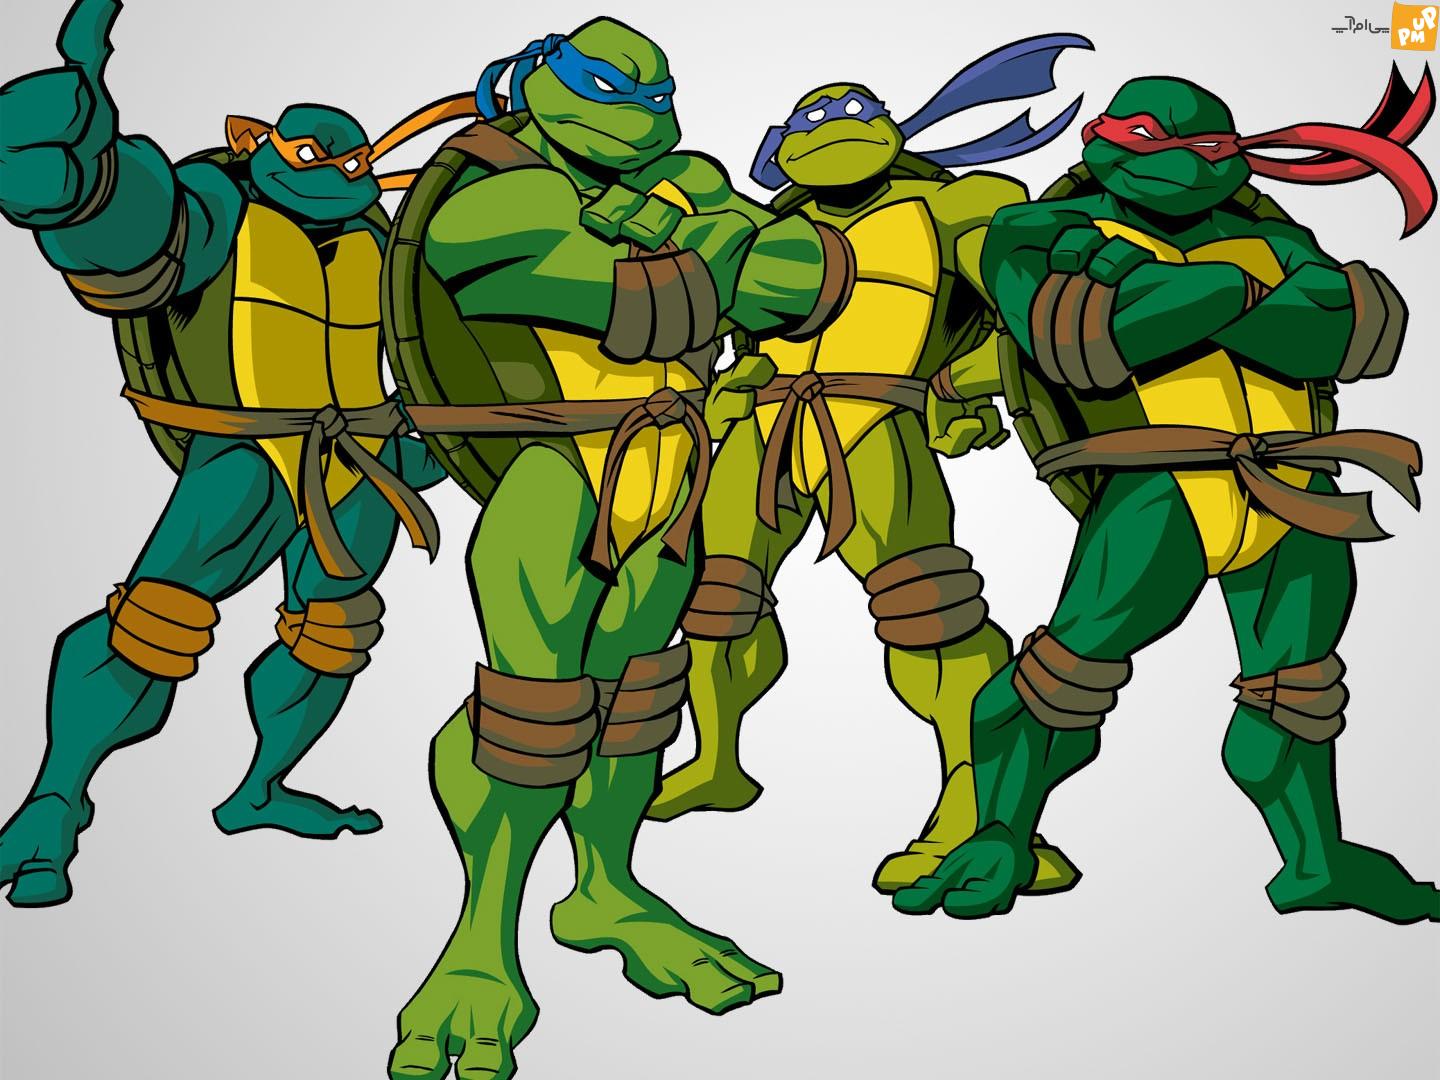 سری جدید لاکپشت های نینجا در پارامونت ساخته می شود!/نام جدید این سریال Teenage Mutant Ninja Turtles: Mutant Mayhem است!/عکس